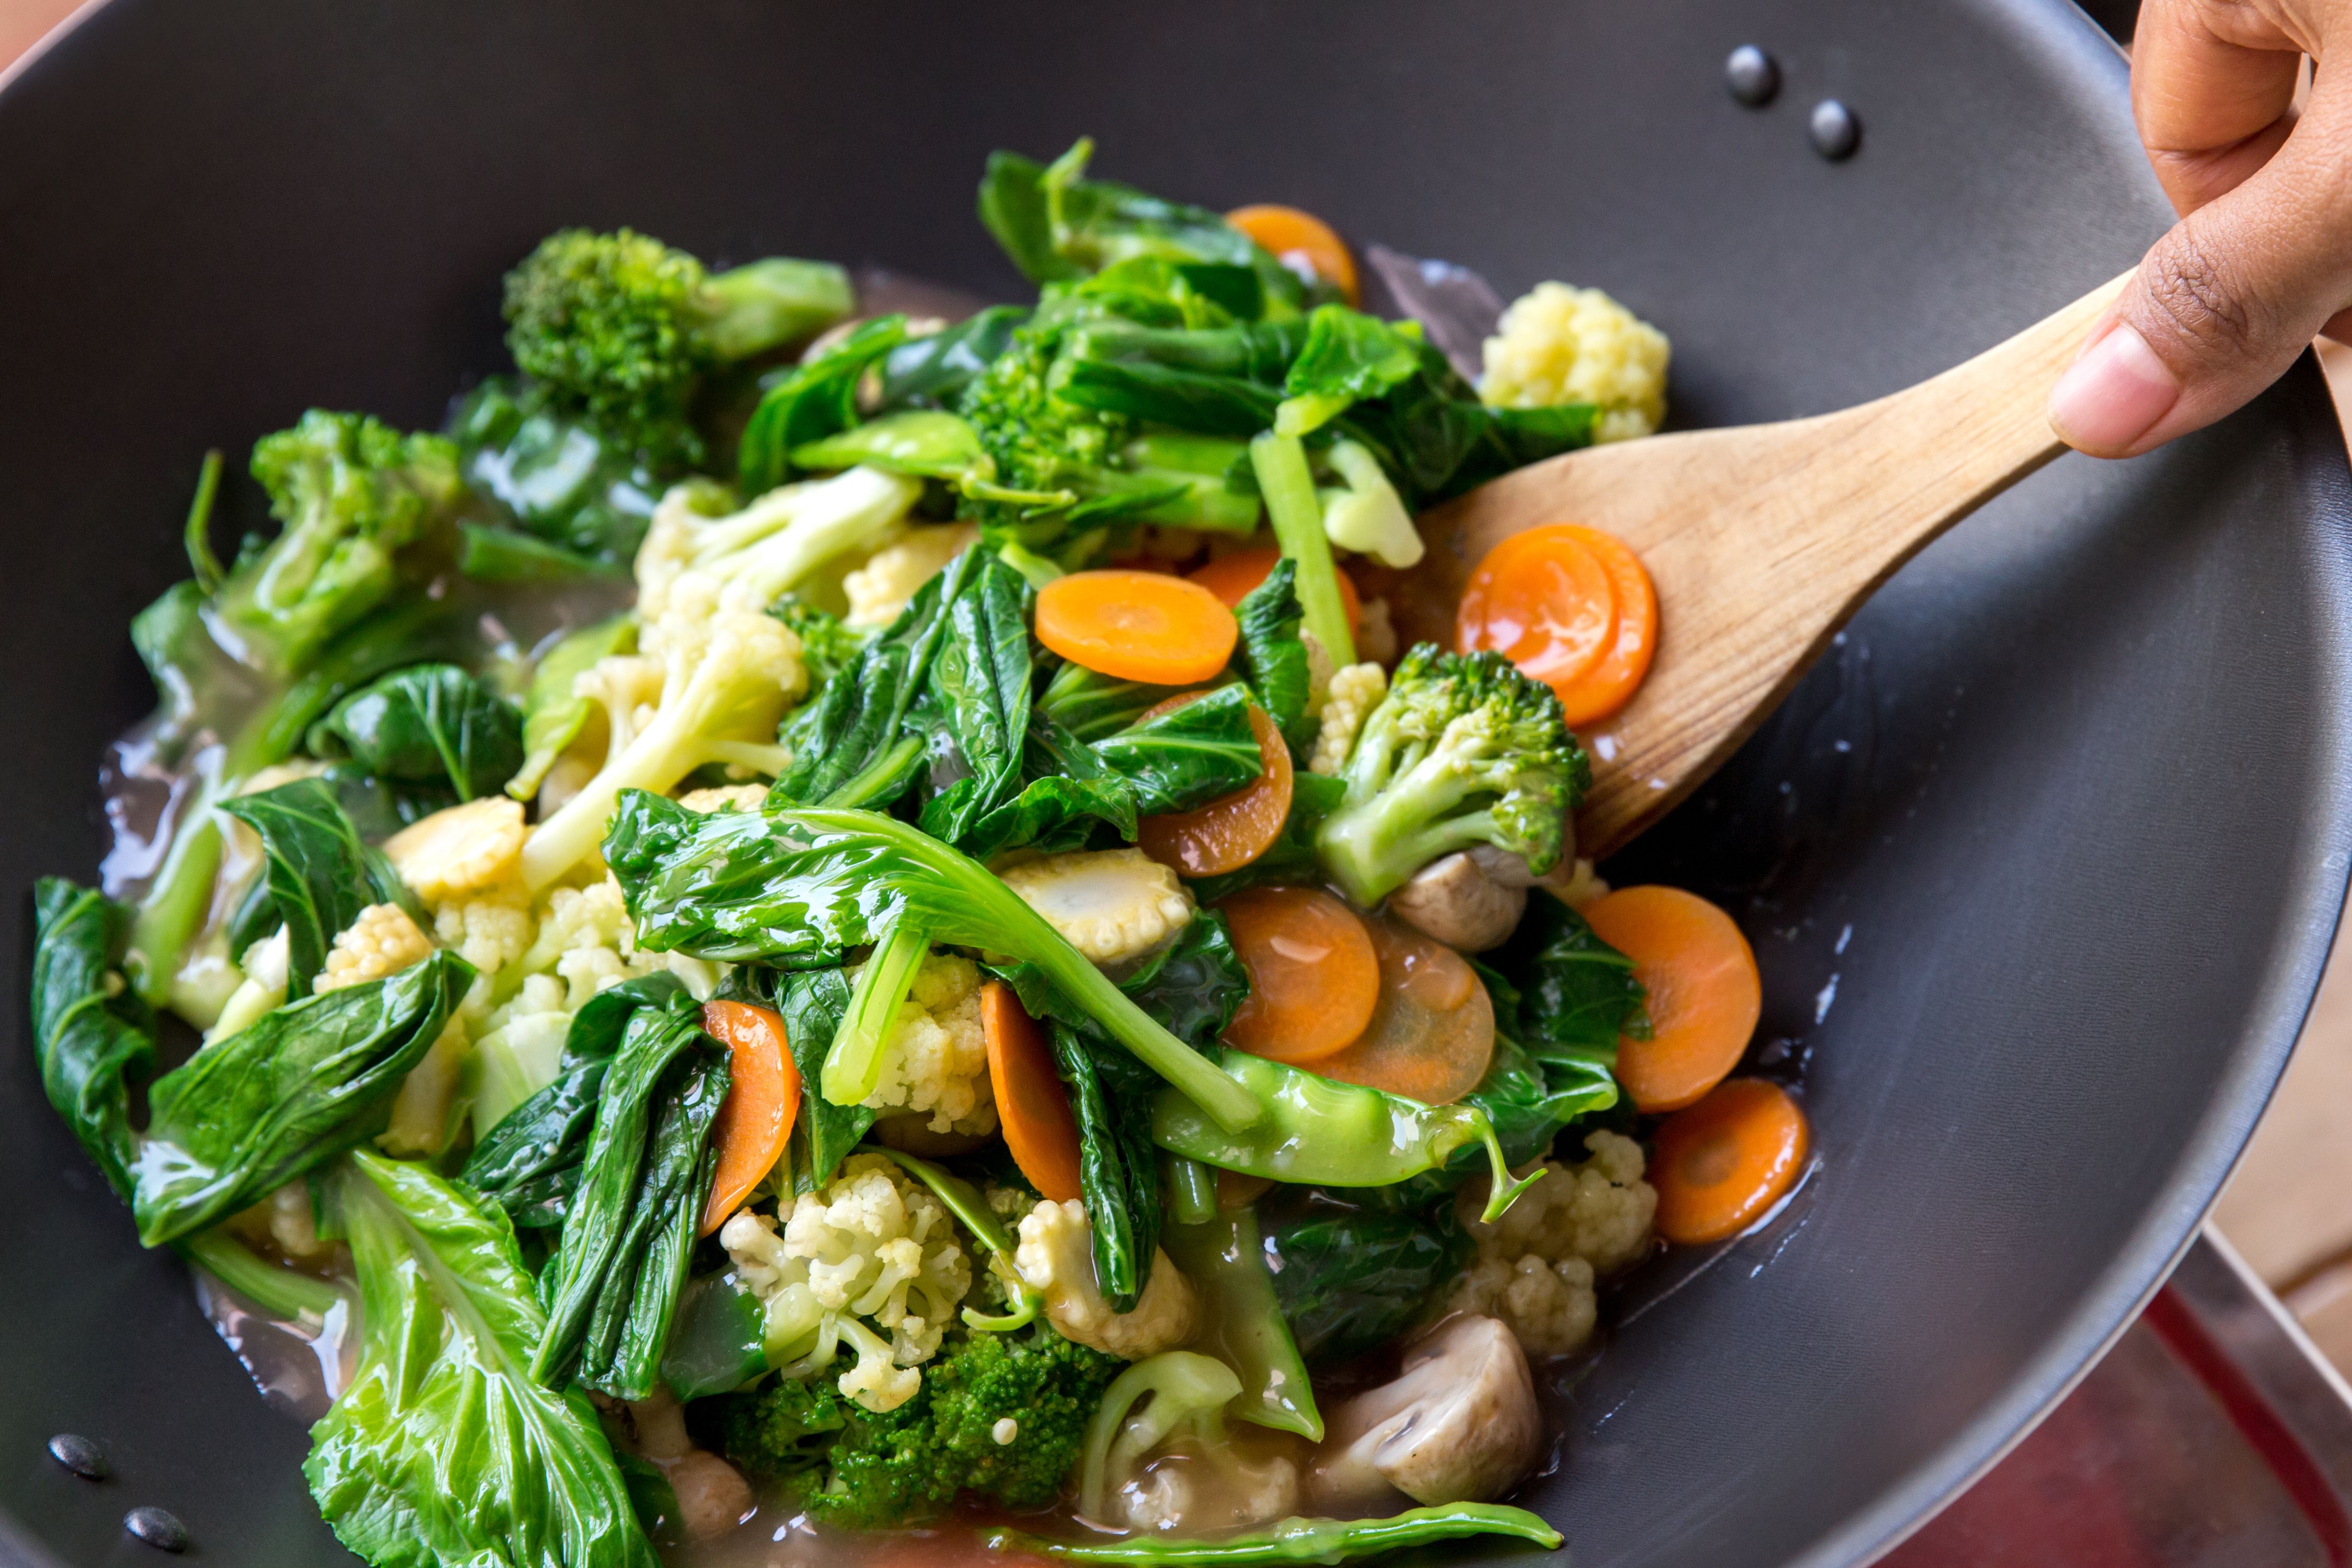 Buka Potensi Anda: Ubah Kesehatan Anda dengan Konsultasi Nutrisi Prof. Max Wellness tentang Vegetarianisme